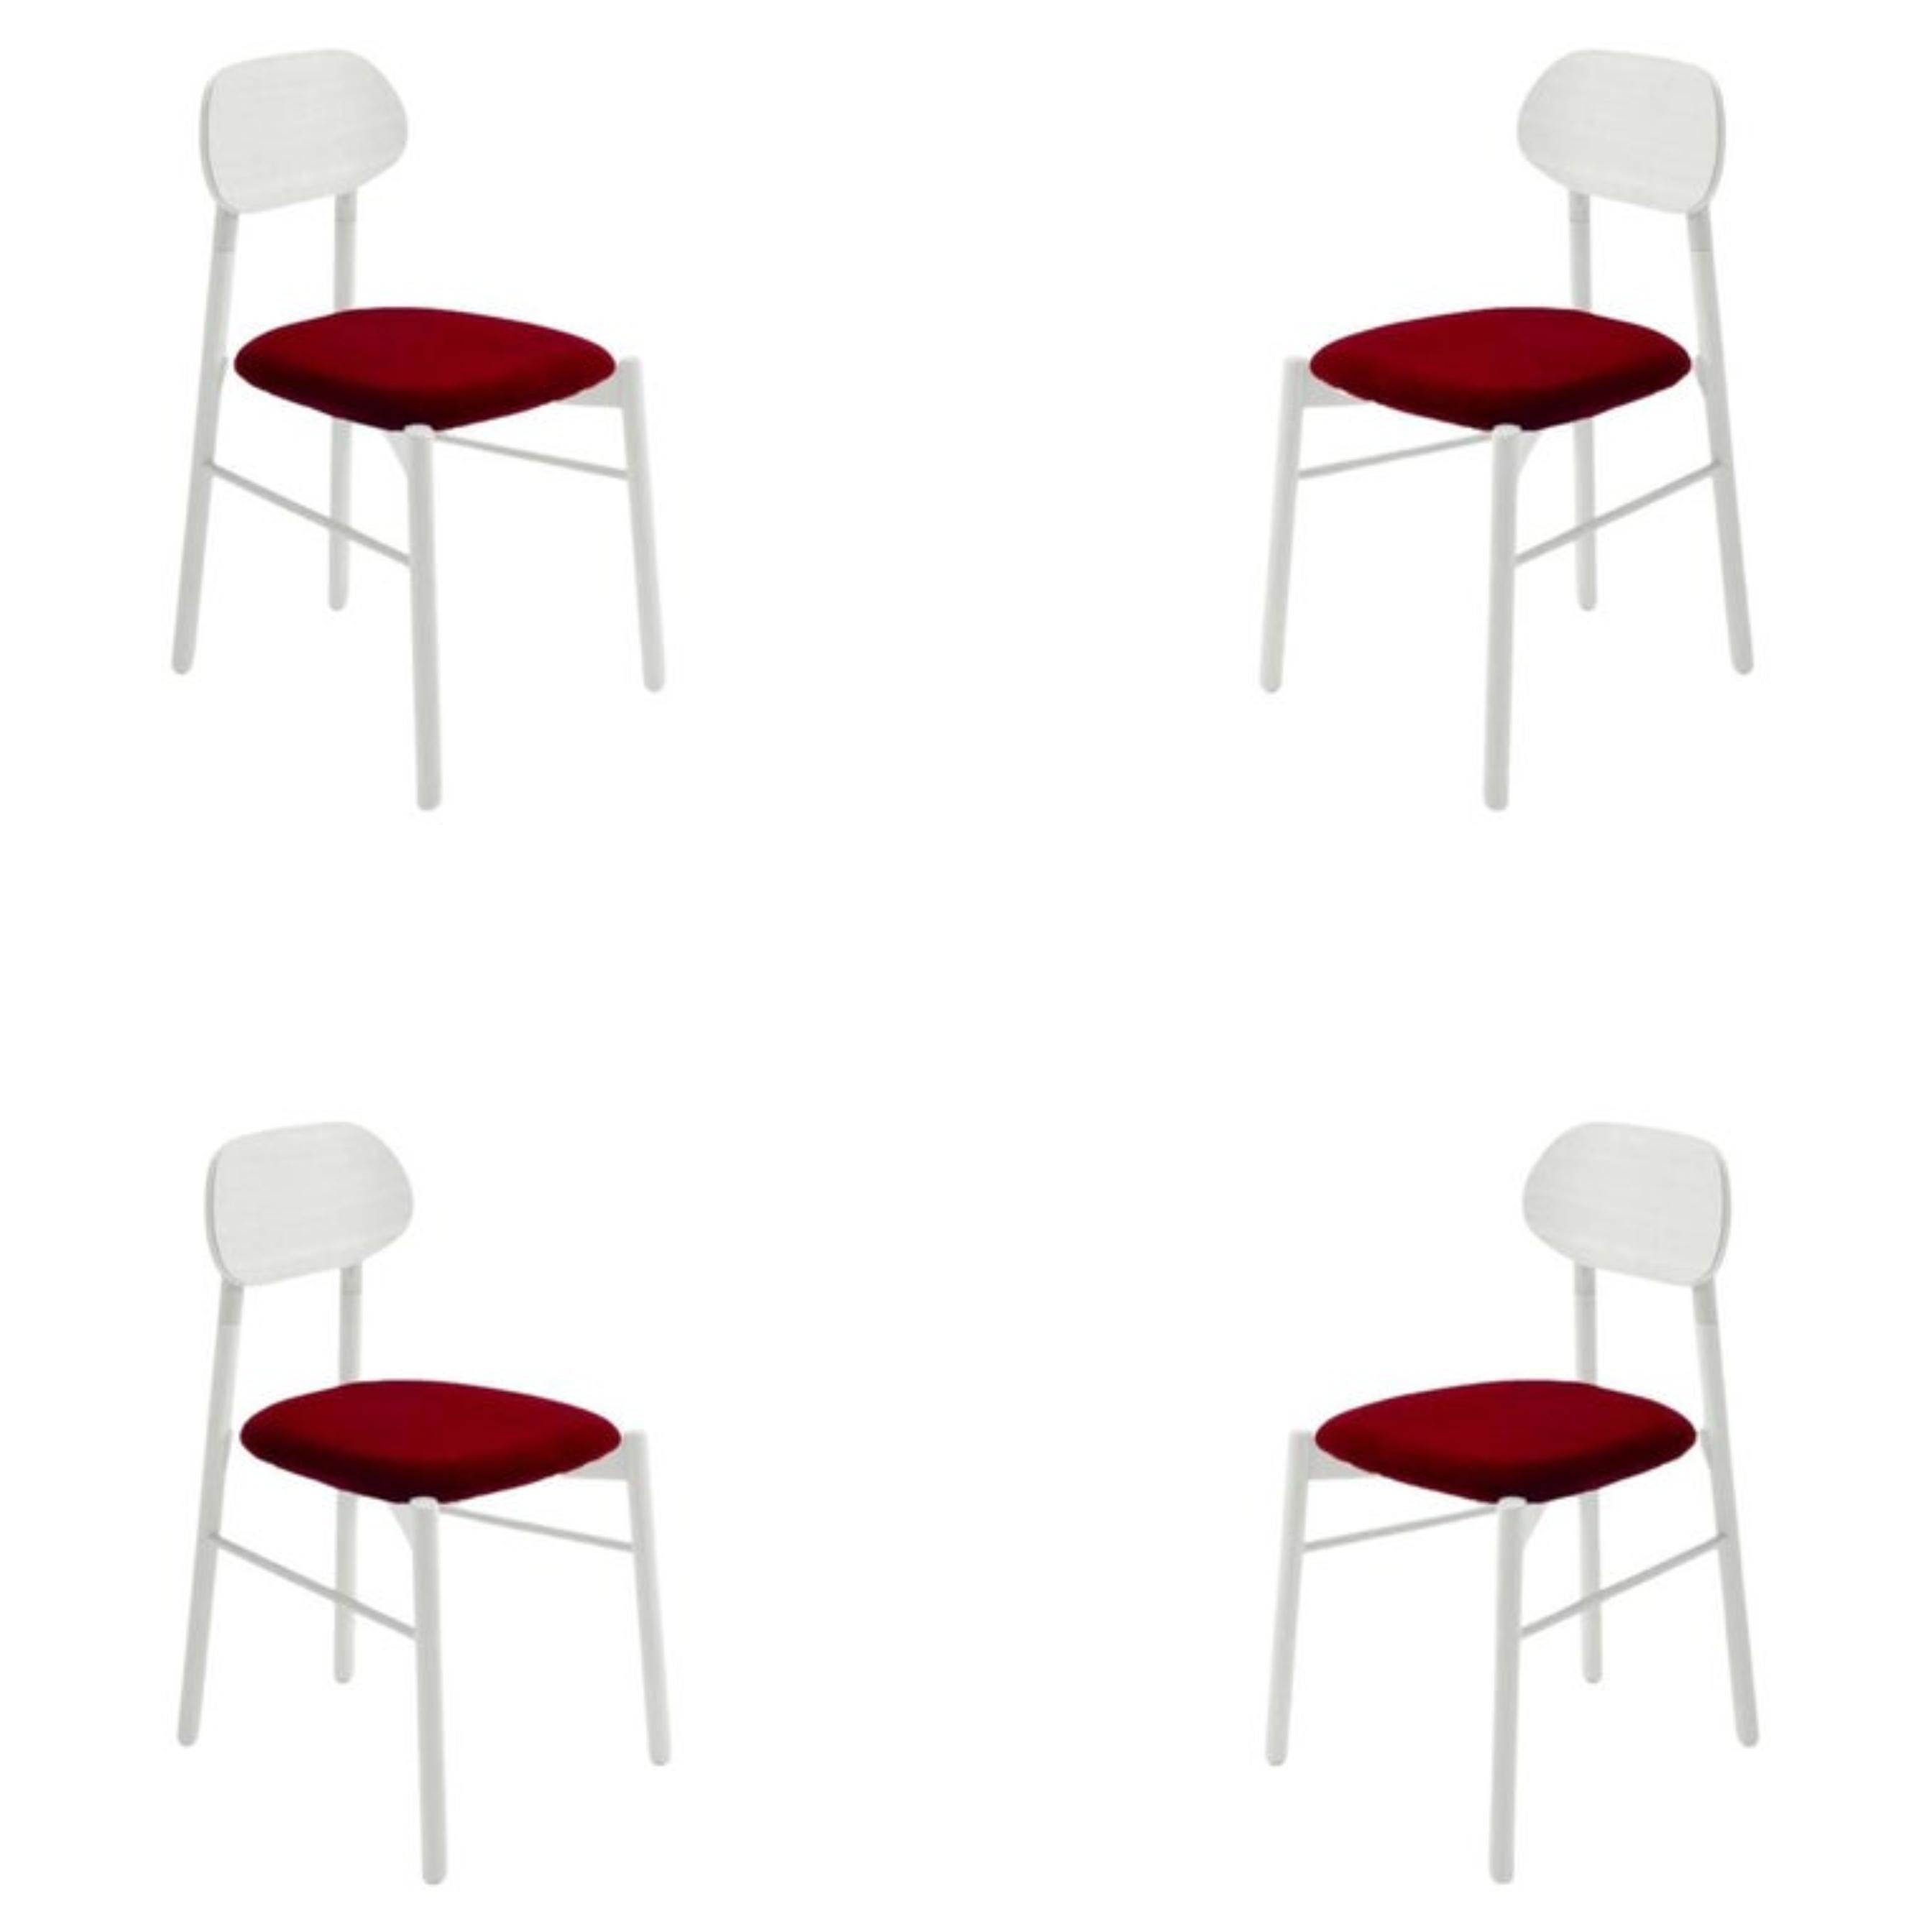 Ensemble de 4 chaises Bokken, assise rembourrée en velours, hêtre naturel, blanc (tissu catégorie C) de Colé Italia avec Bellavista/Piccini.
BK00CC Chaise BOKKEN - Naturel hêtre_veloursorthy 37 rosso
Dimensions : H.81,7 D.49 L.53,5 cm
Matériaux :